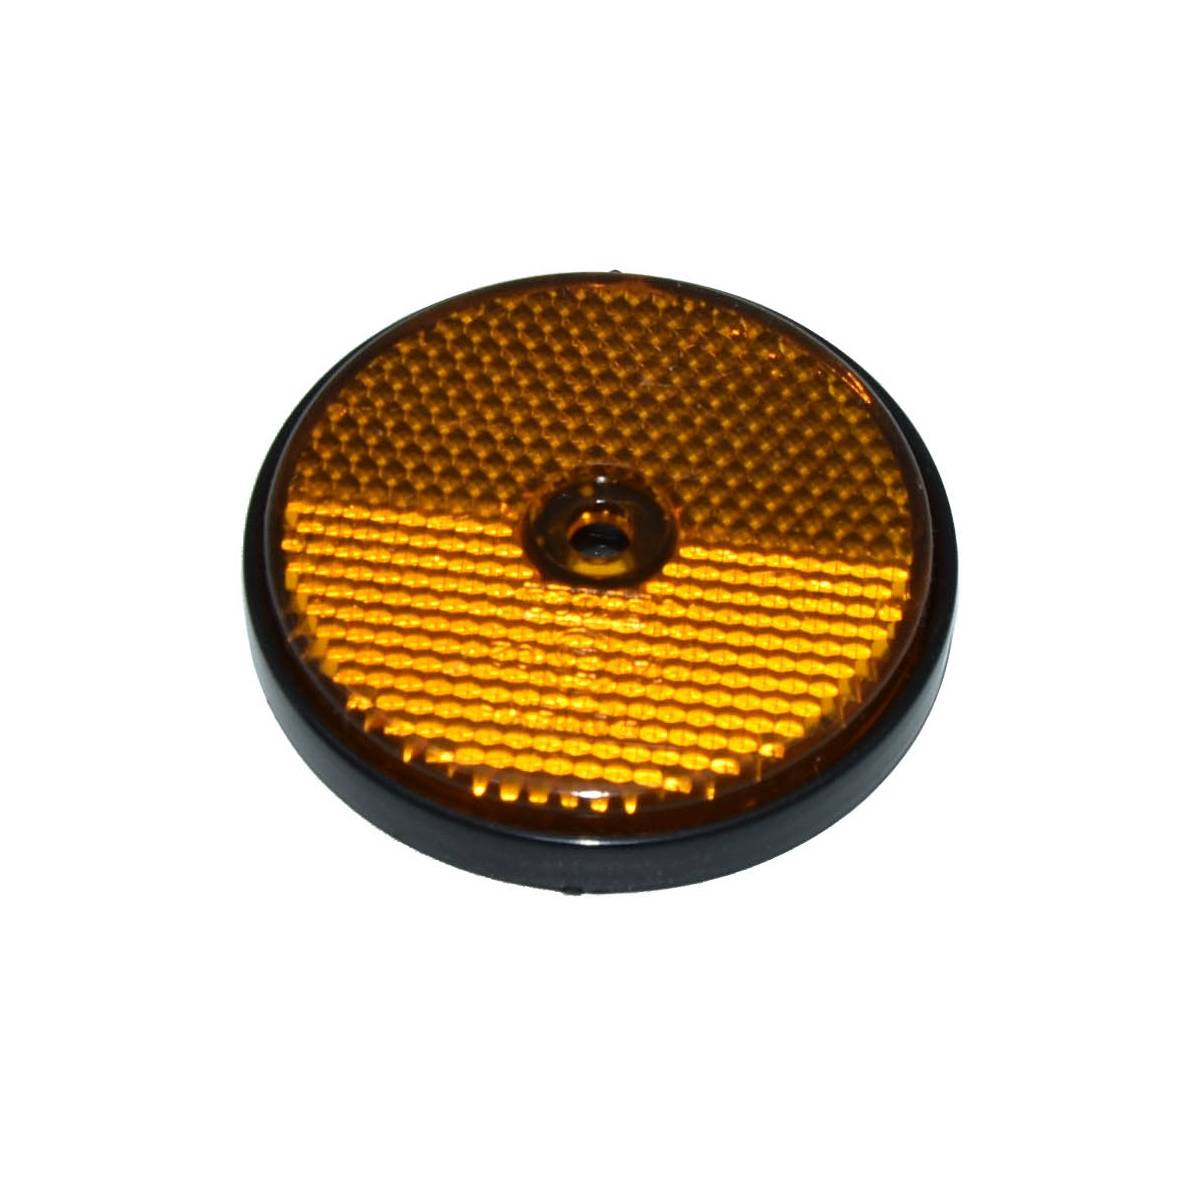 10x Aspöck Reflektor orange / gelb rund 60mm mit Schraubloch